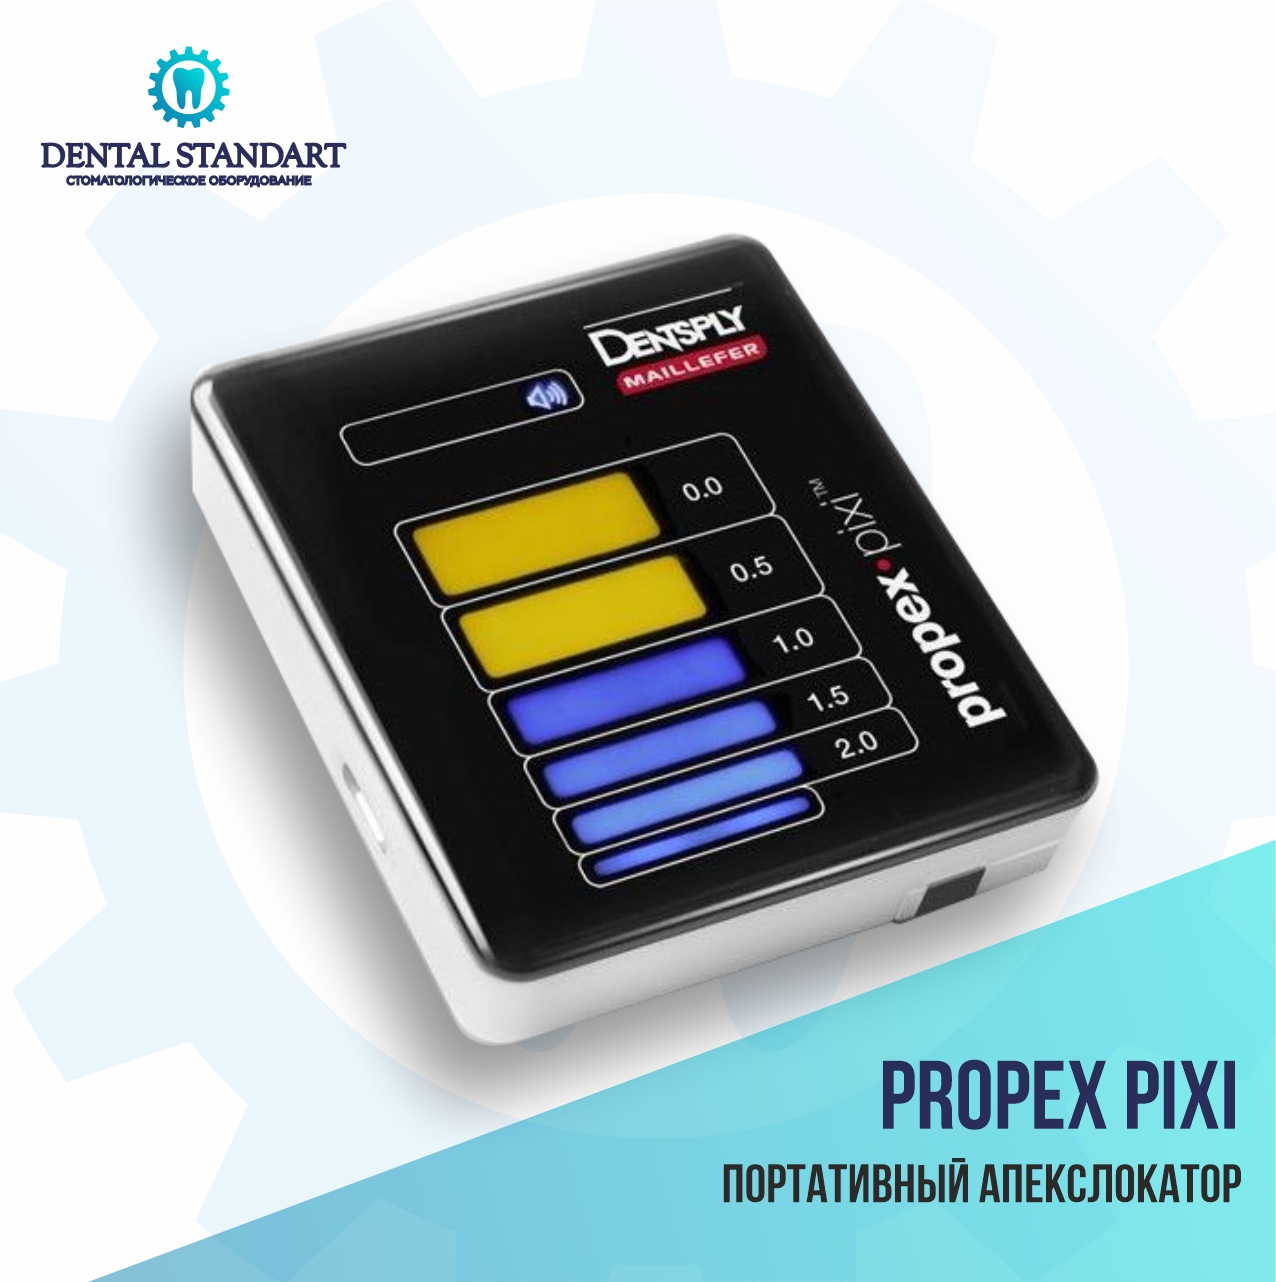 Стоматологическое оборудование в Краснодаре. ProPex Pixi – портативный апекслокатор.